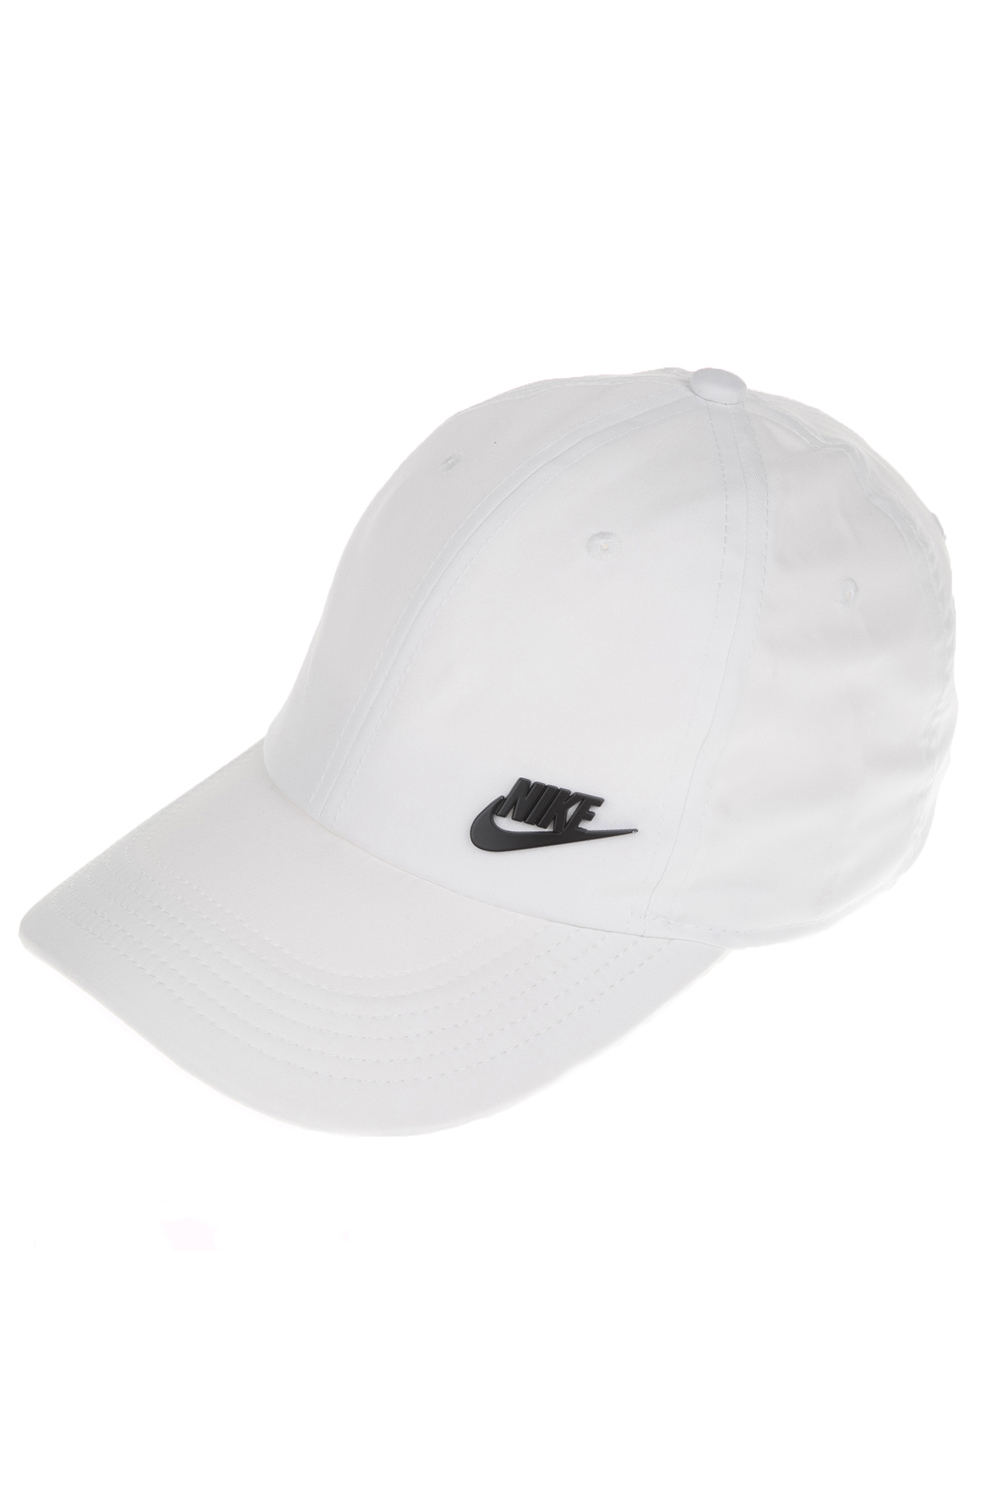 Παιδικά/Girls/Αξεσουάρ/Καπέλα NIKE - Παιδικό καπέλο NIKE λευκό